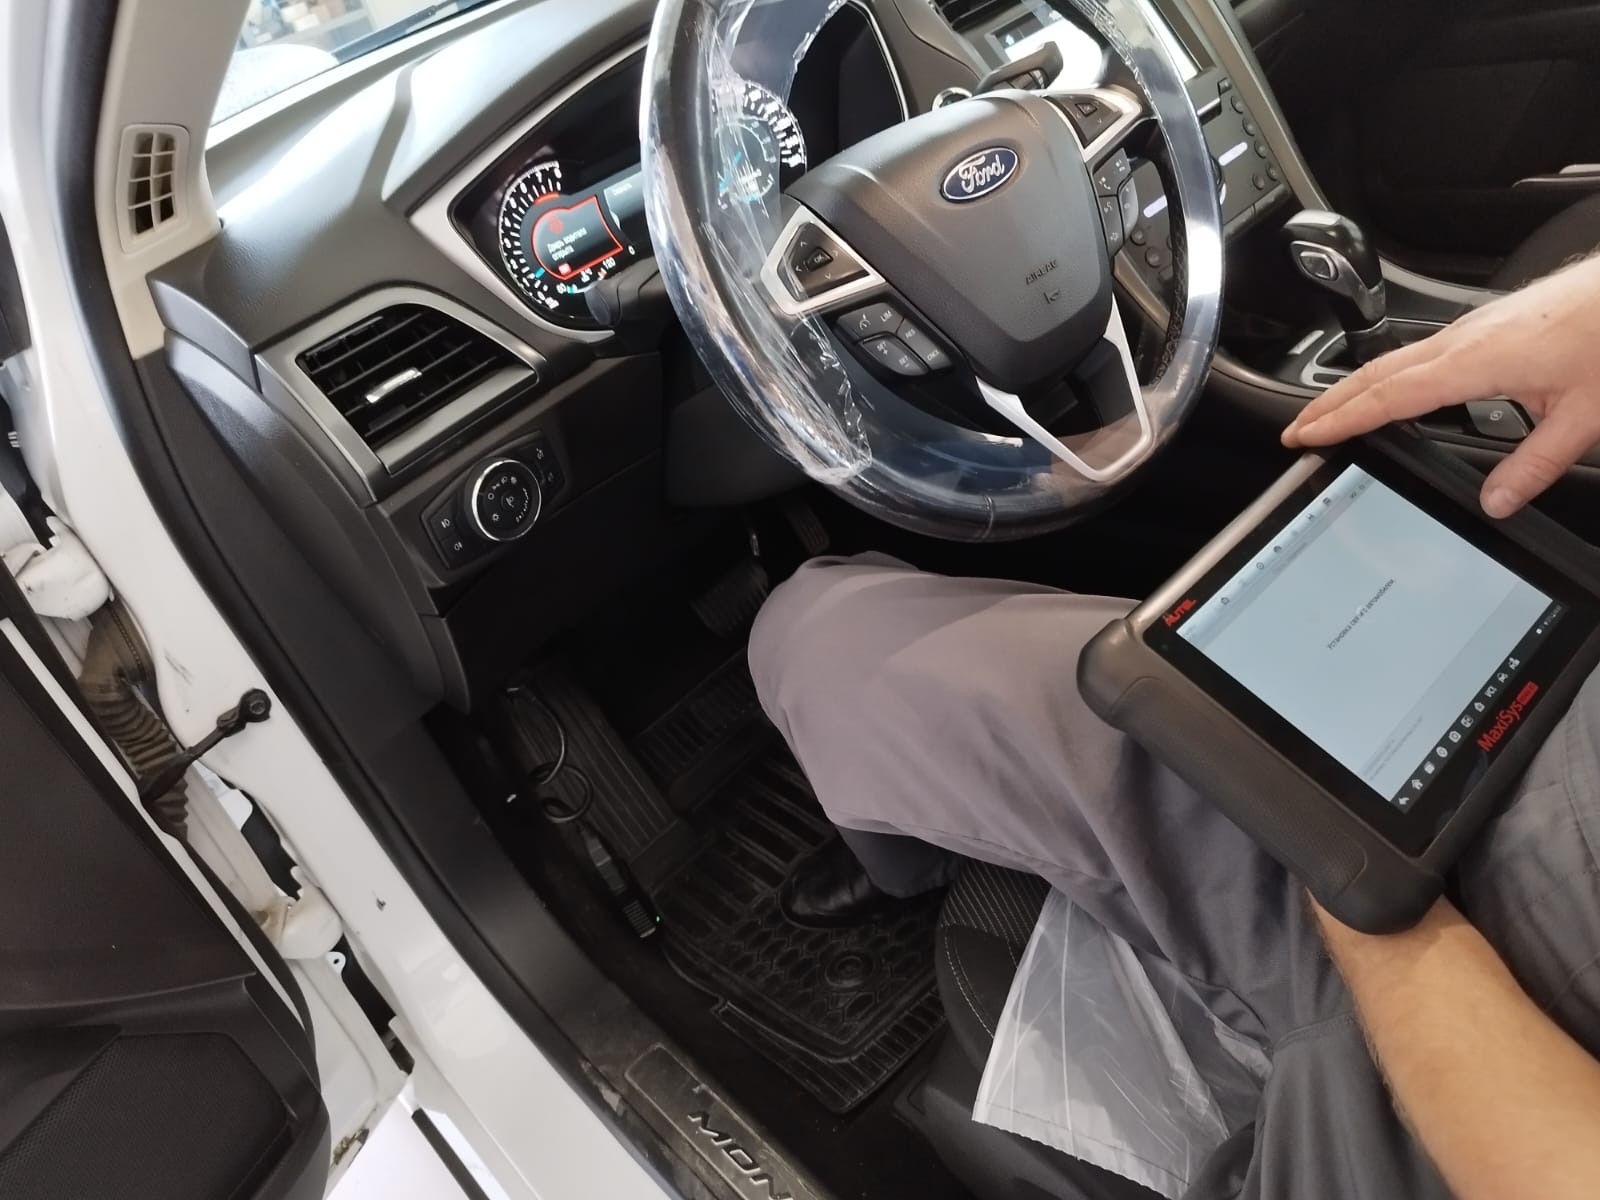 Форд мондео поиск неисправности электрики автомобиля компьютерная диагностика.